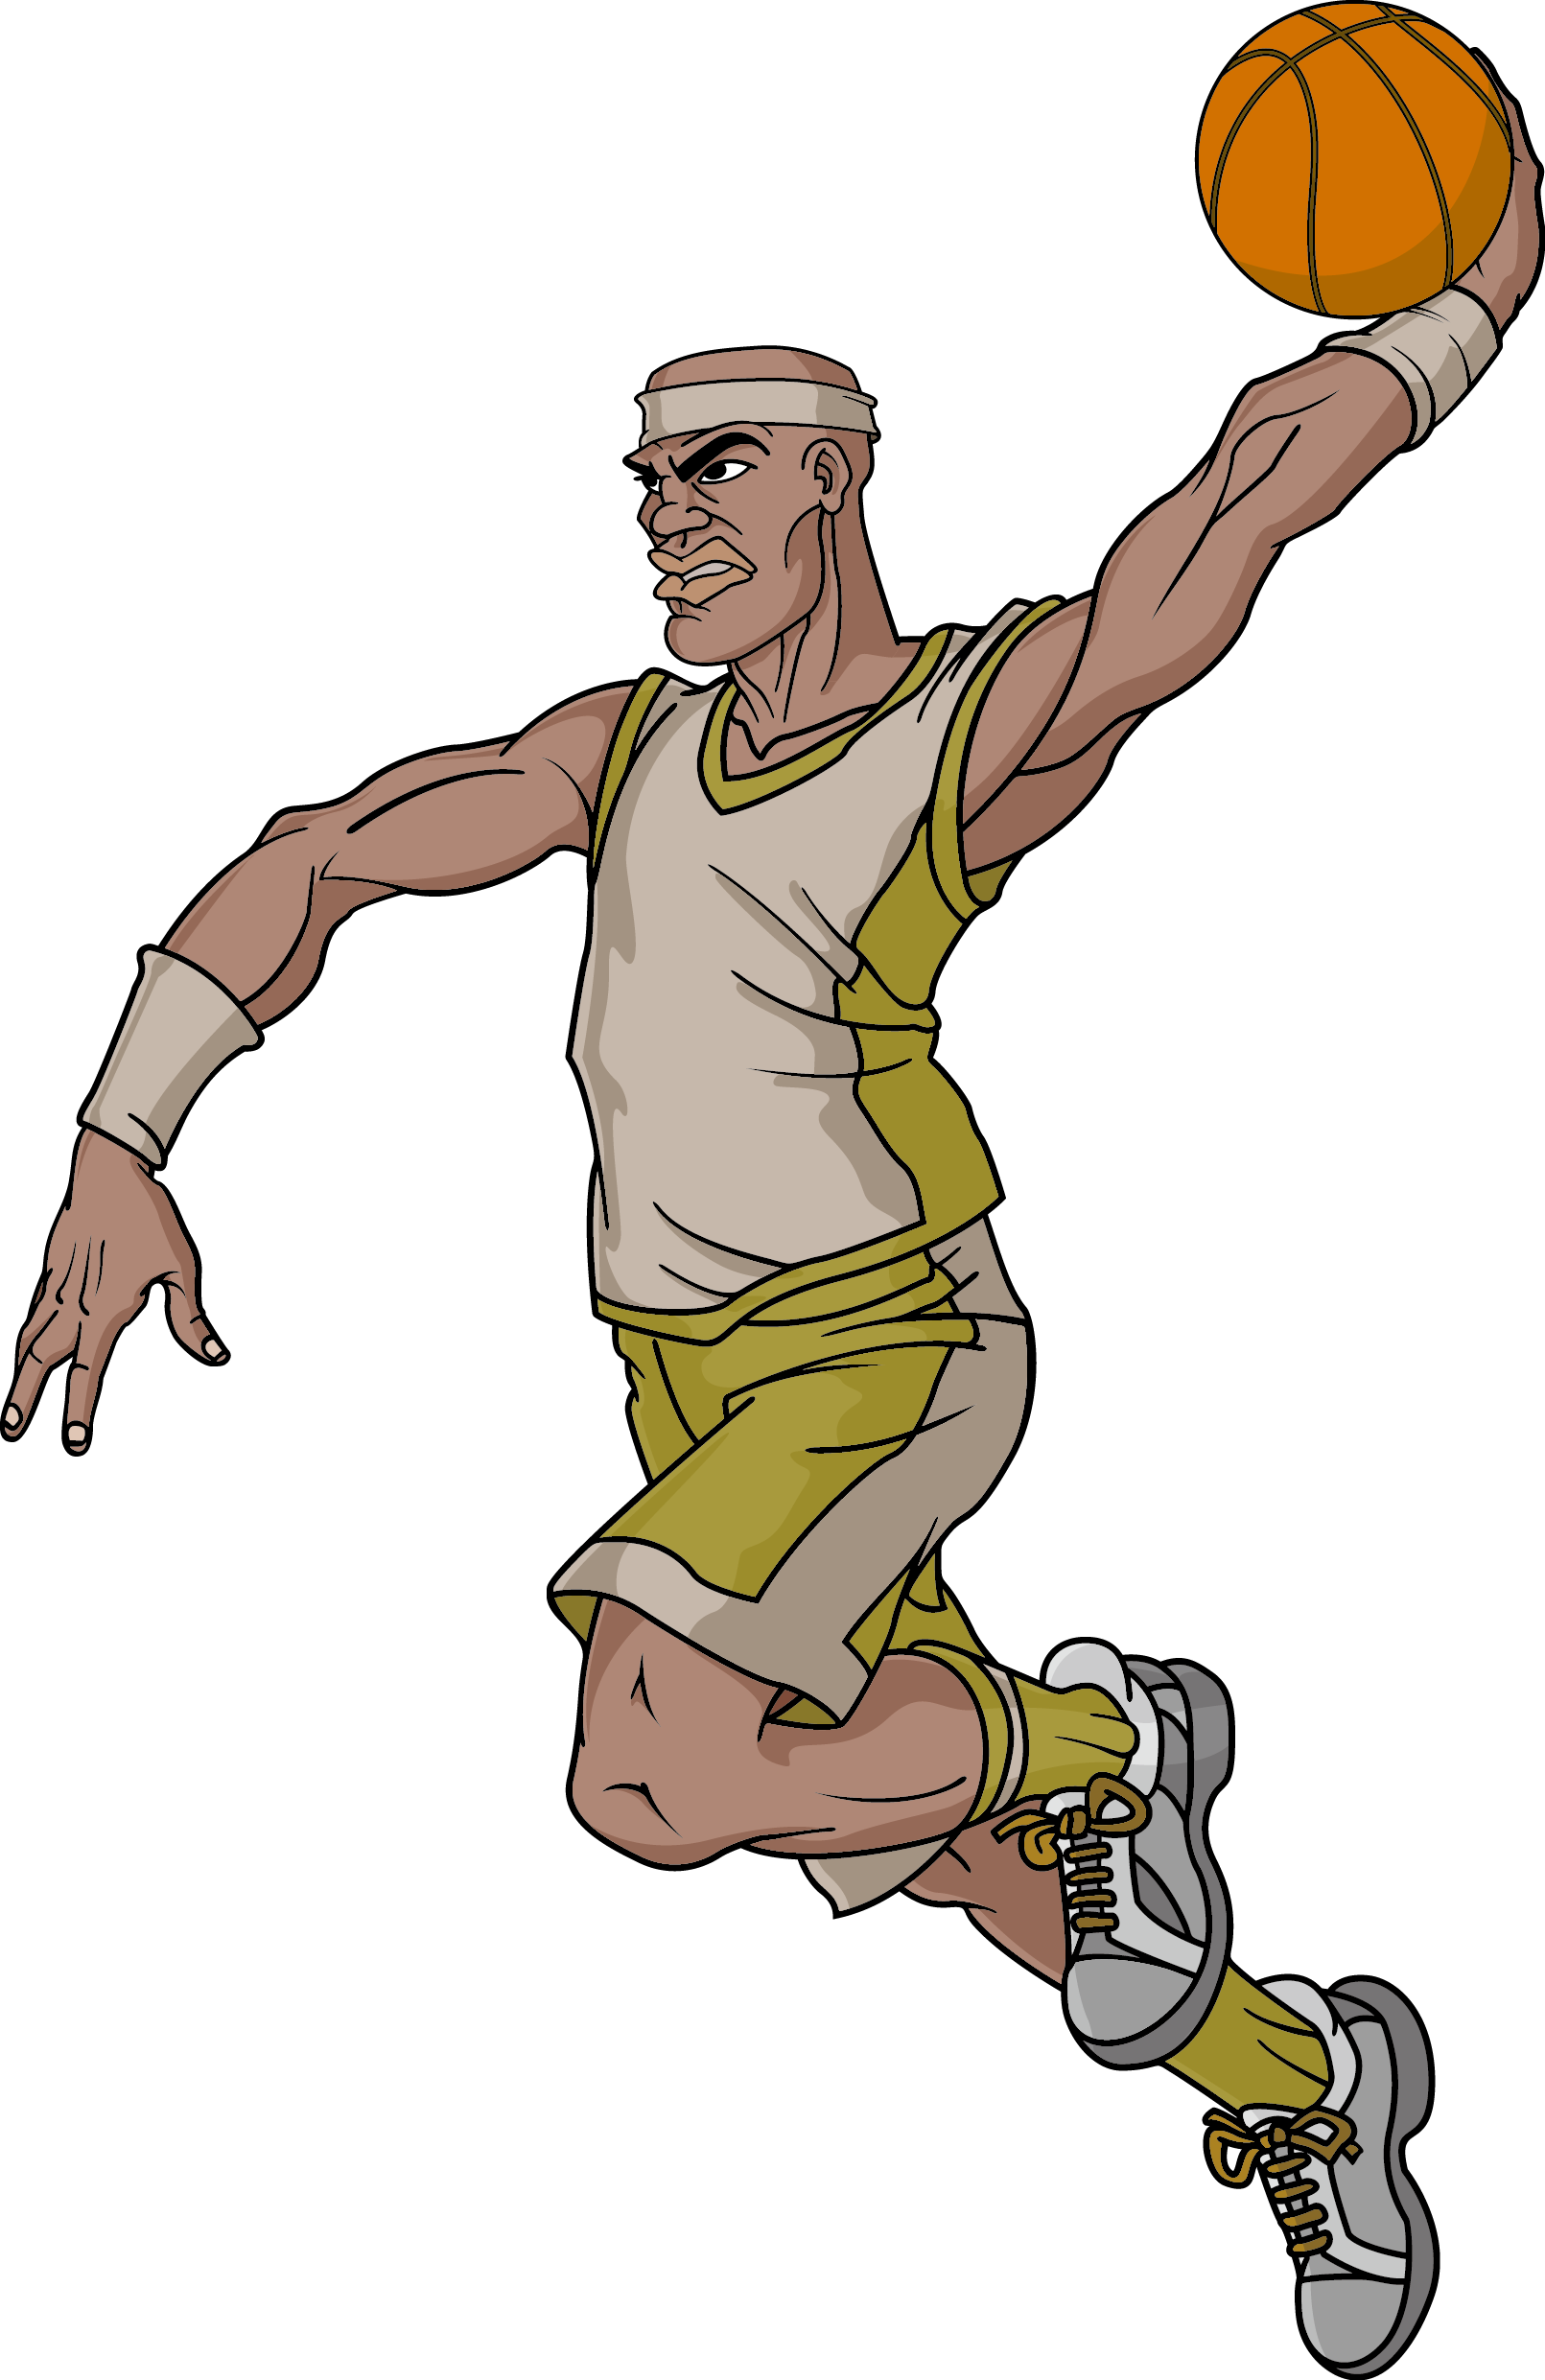 Nba Basketball Cartoon Character - Jogo De Basquete Em Desenho (1611x2482)